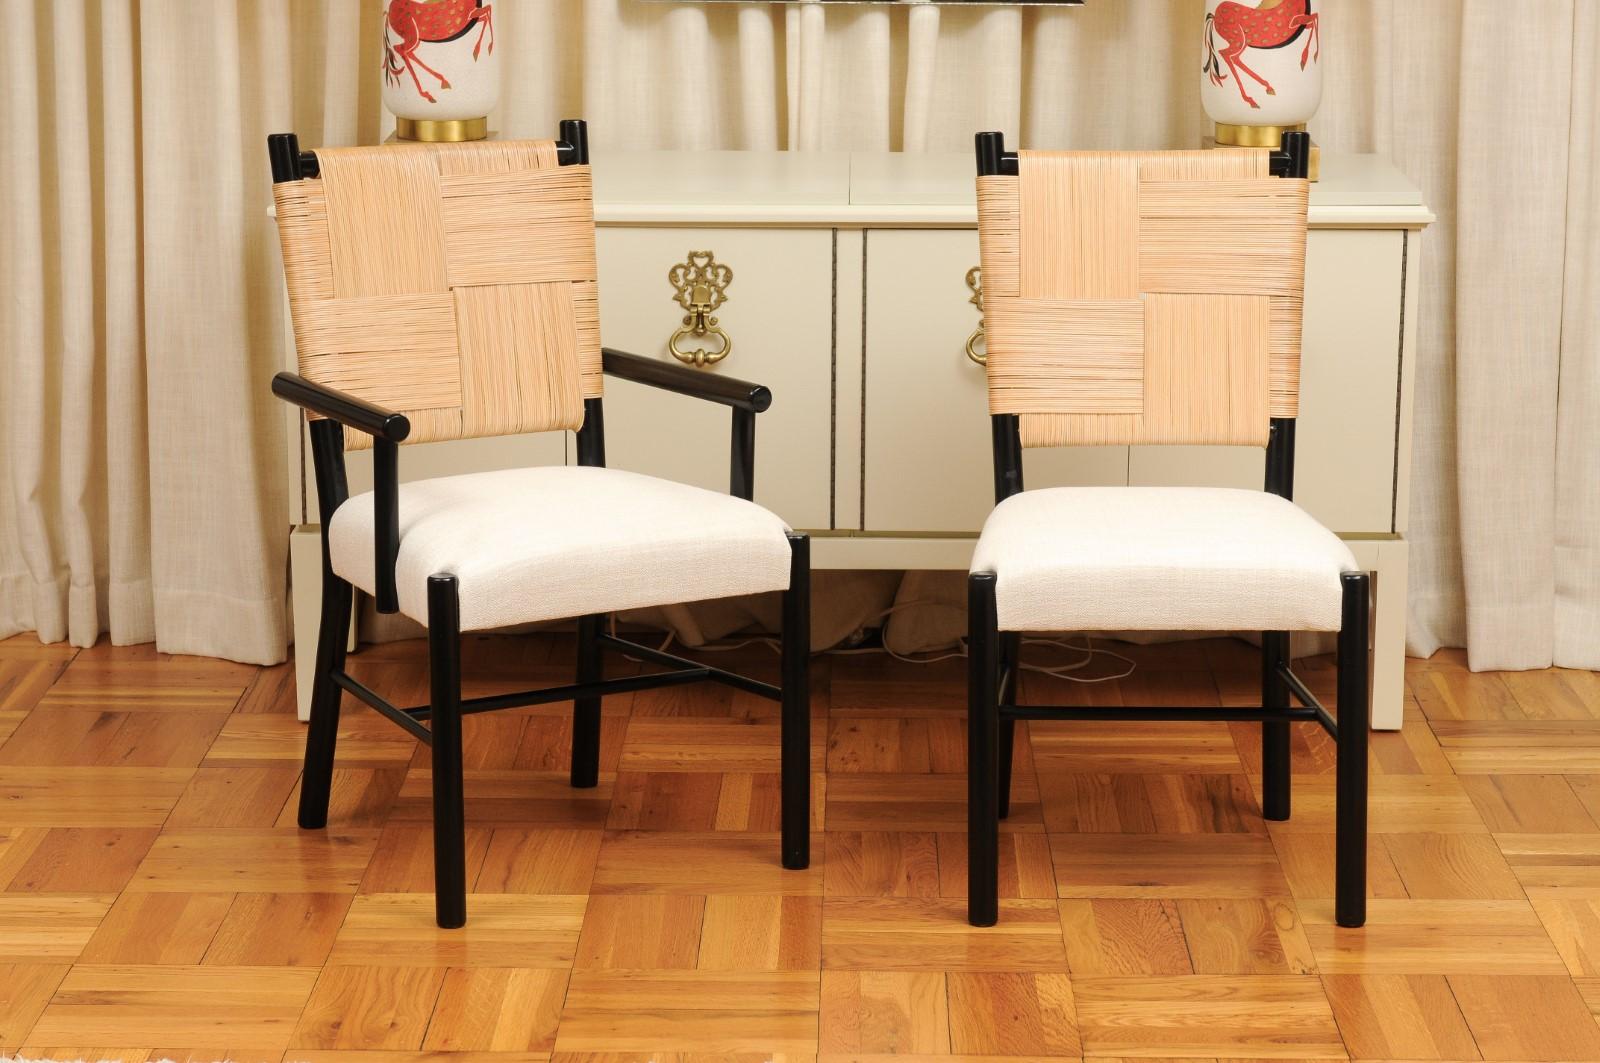 Ce magnifique ensemble de chaises de salle à manger est unique sur le marché mondial. L'ensemble est expédié tel qu'il a été photographié et décrit par les professionnels dans le texte de l'annonce : Méticuleusement restauré par des professionnels,